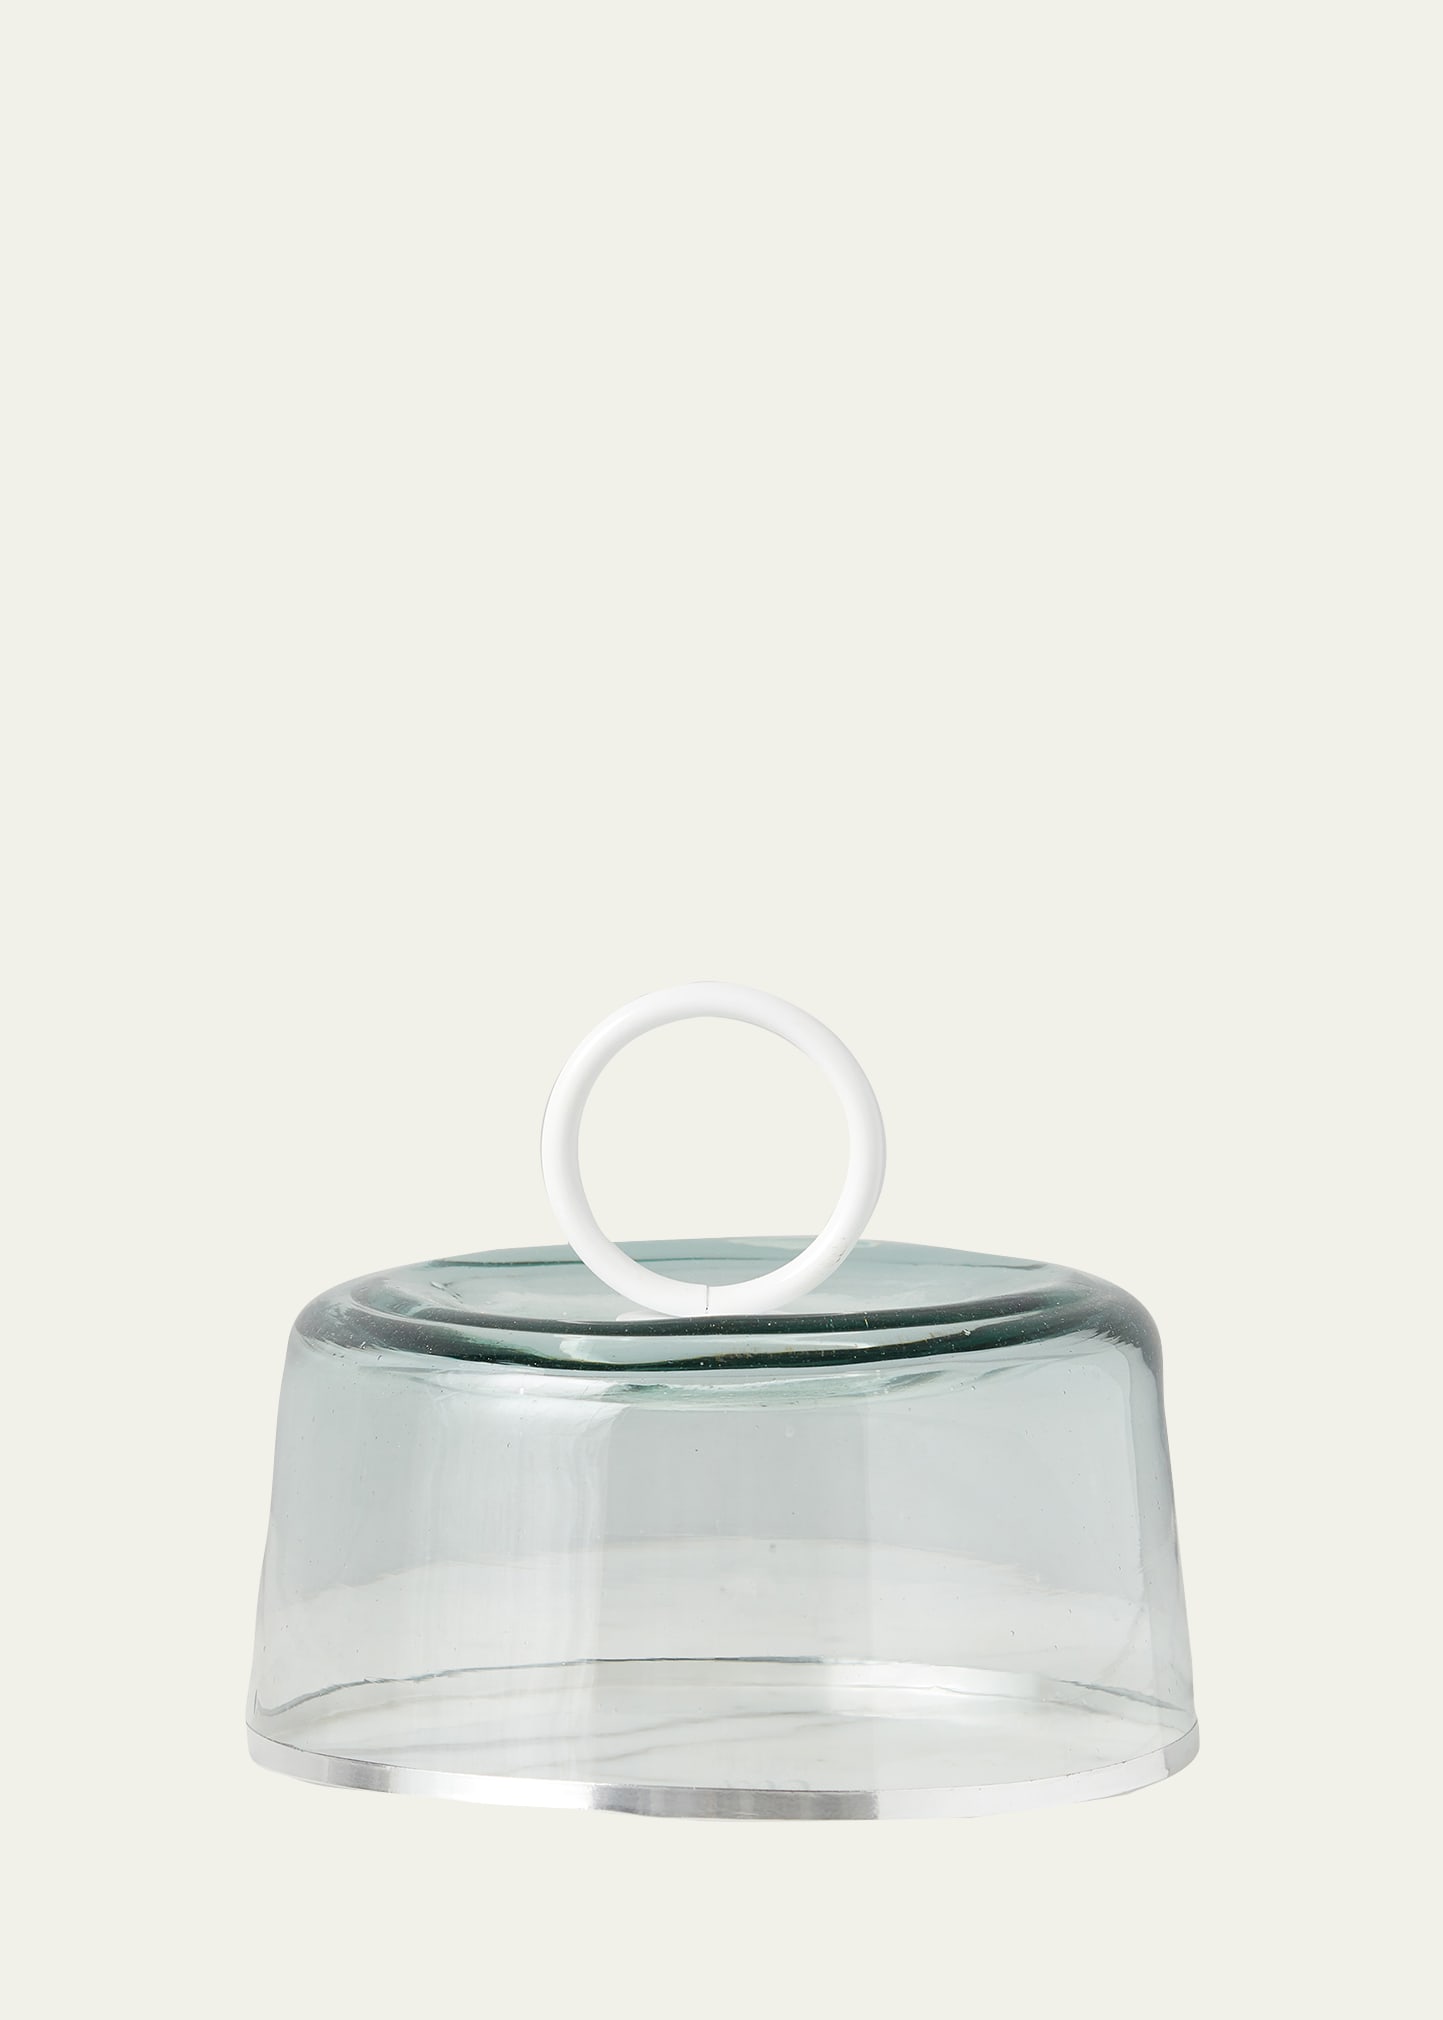 Etúhome Bianca Small Glass Dome, 8.9" In White/silver/clea